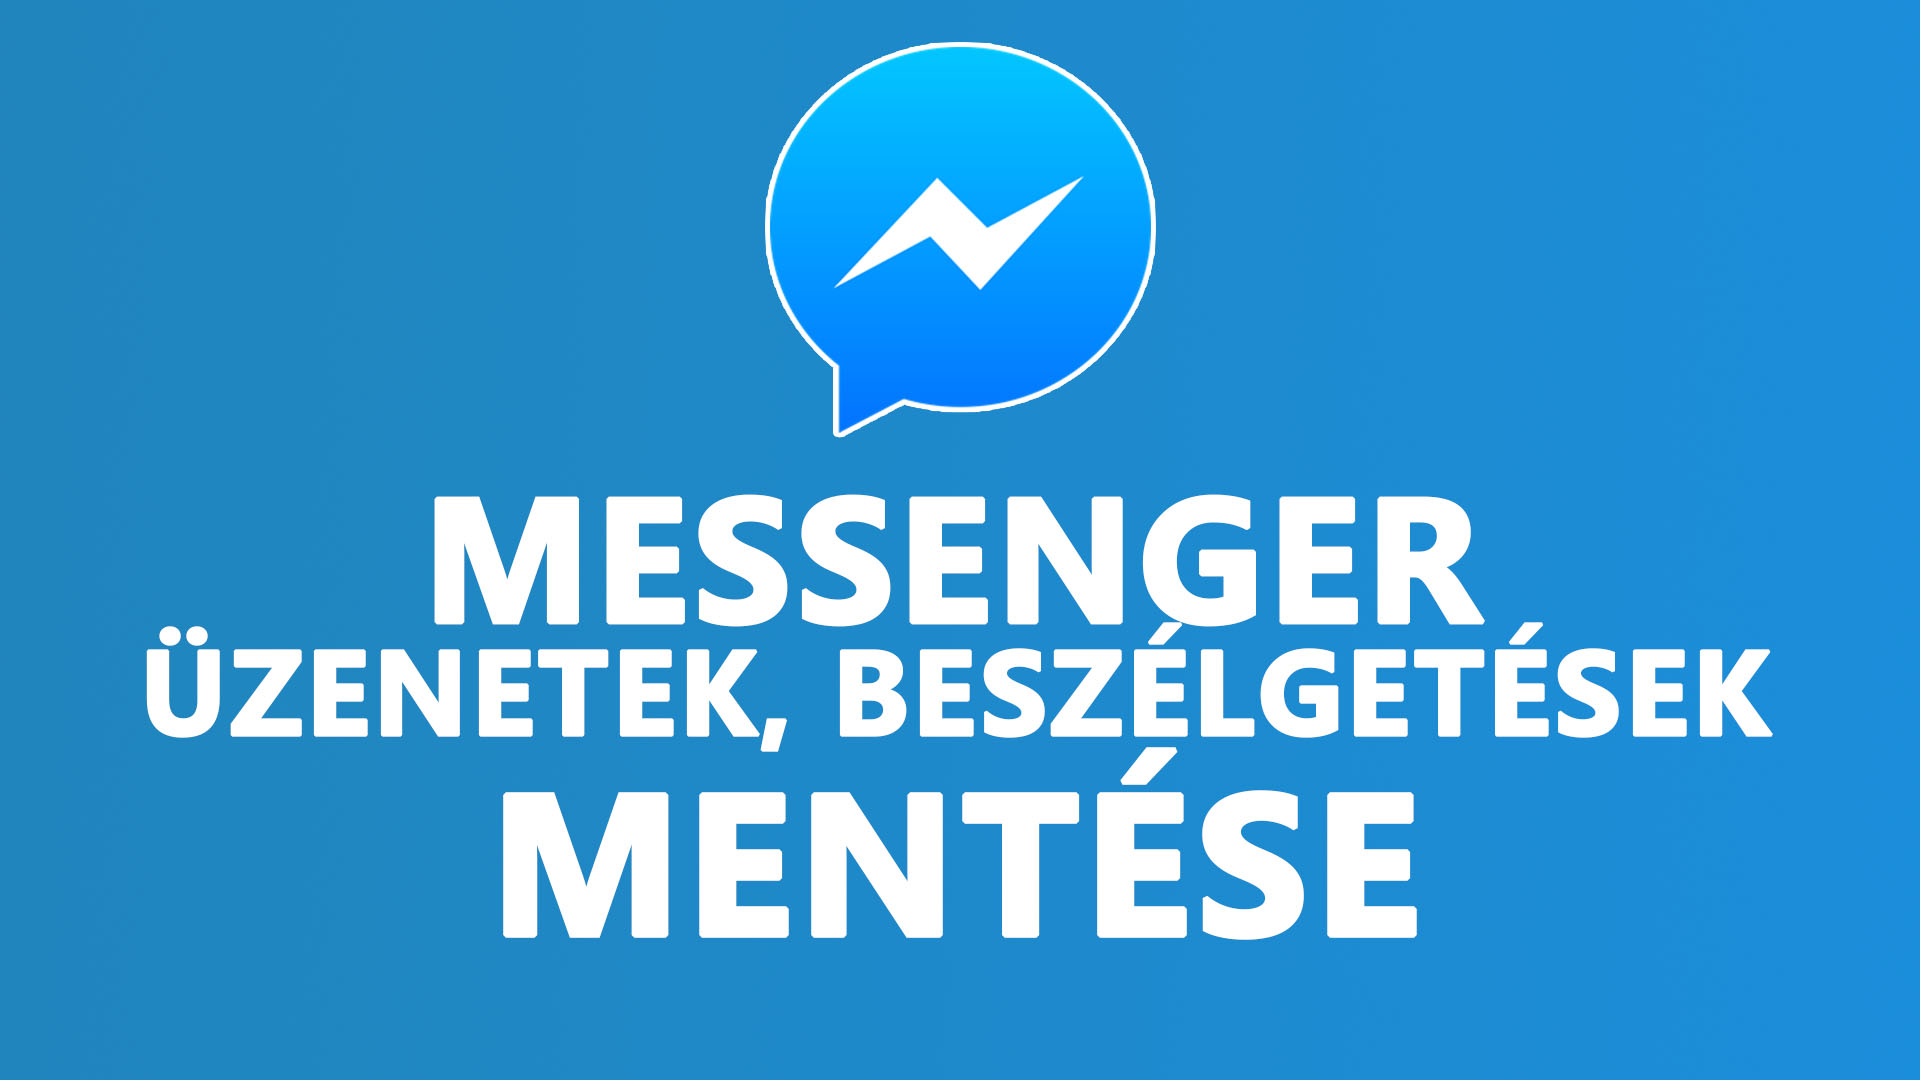 Messenger üzenetek mentése